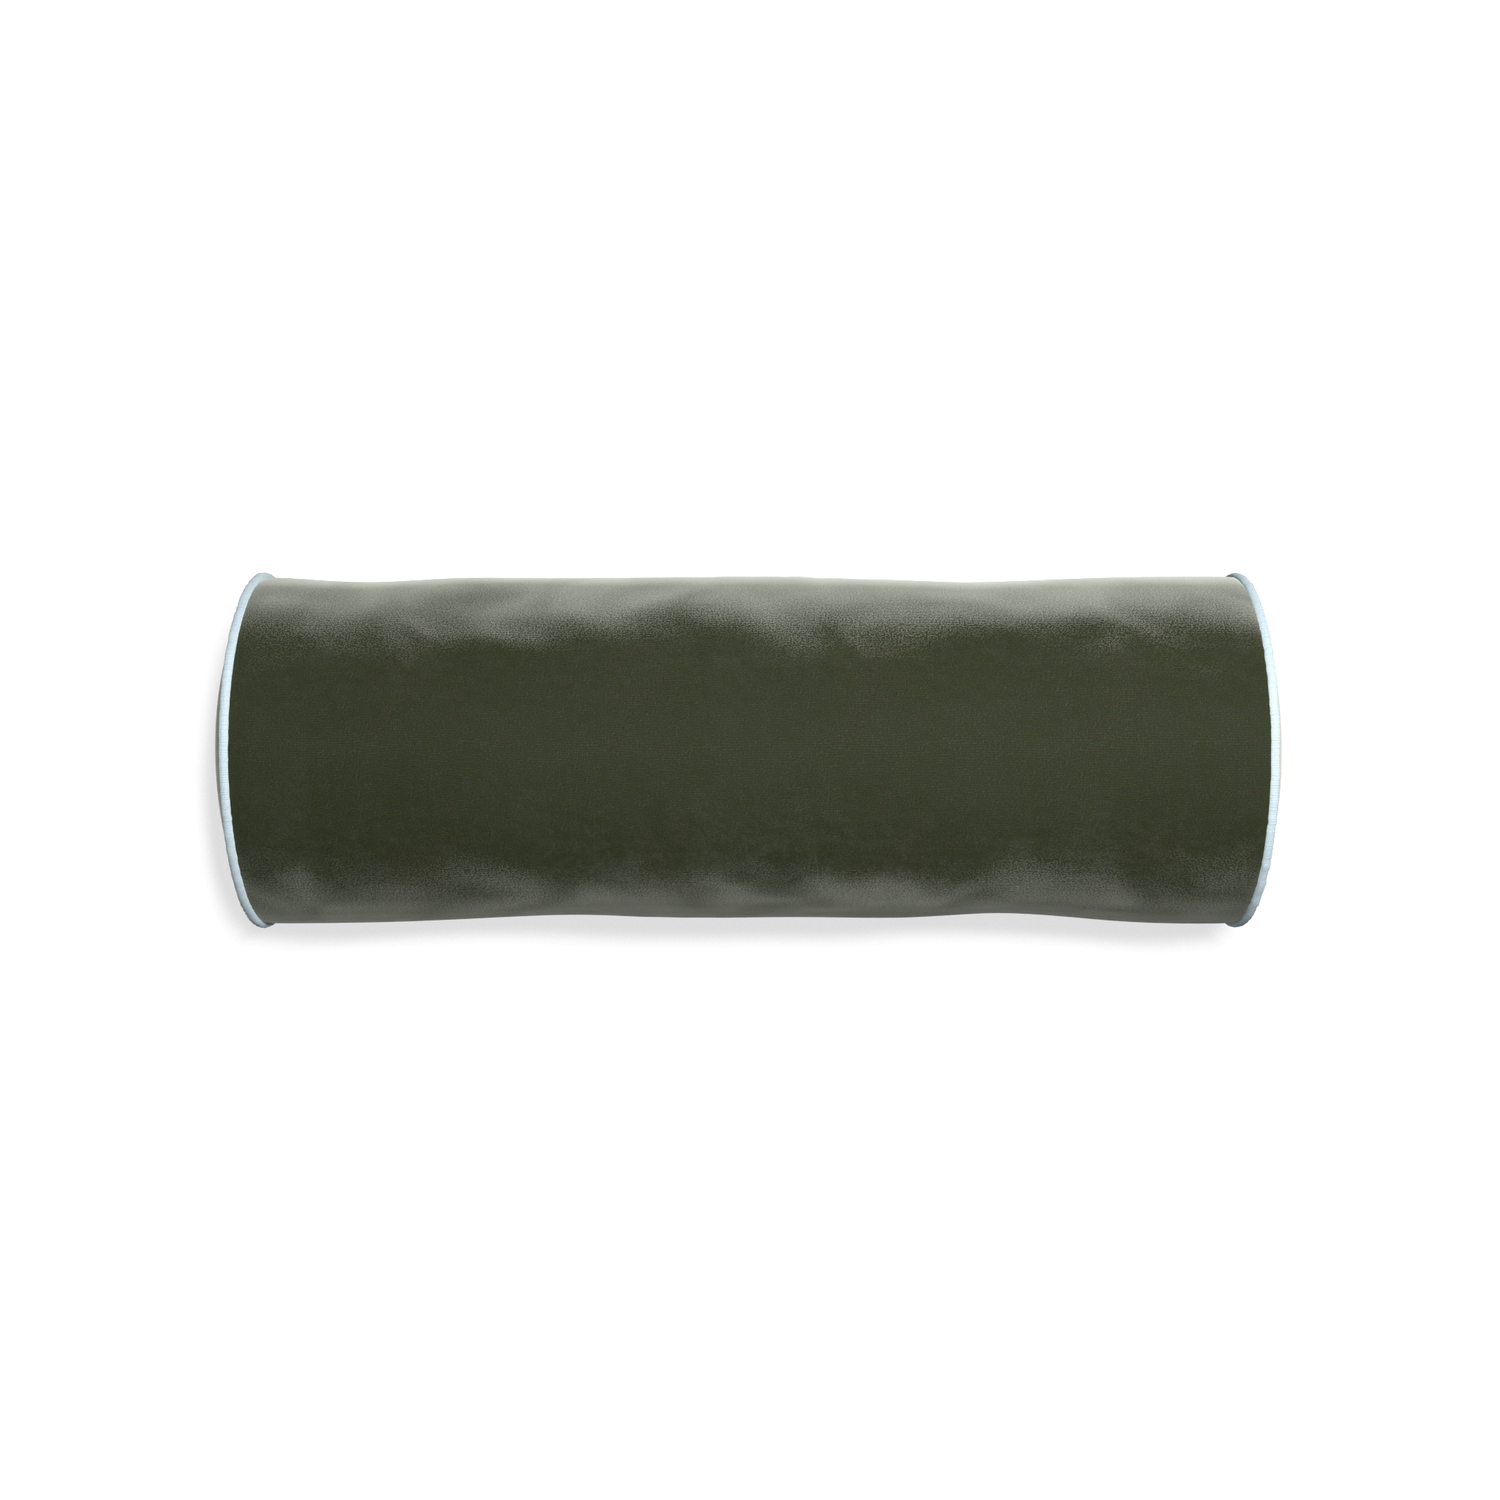 bolster fern green velvet pillow with light blue piping